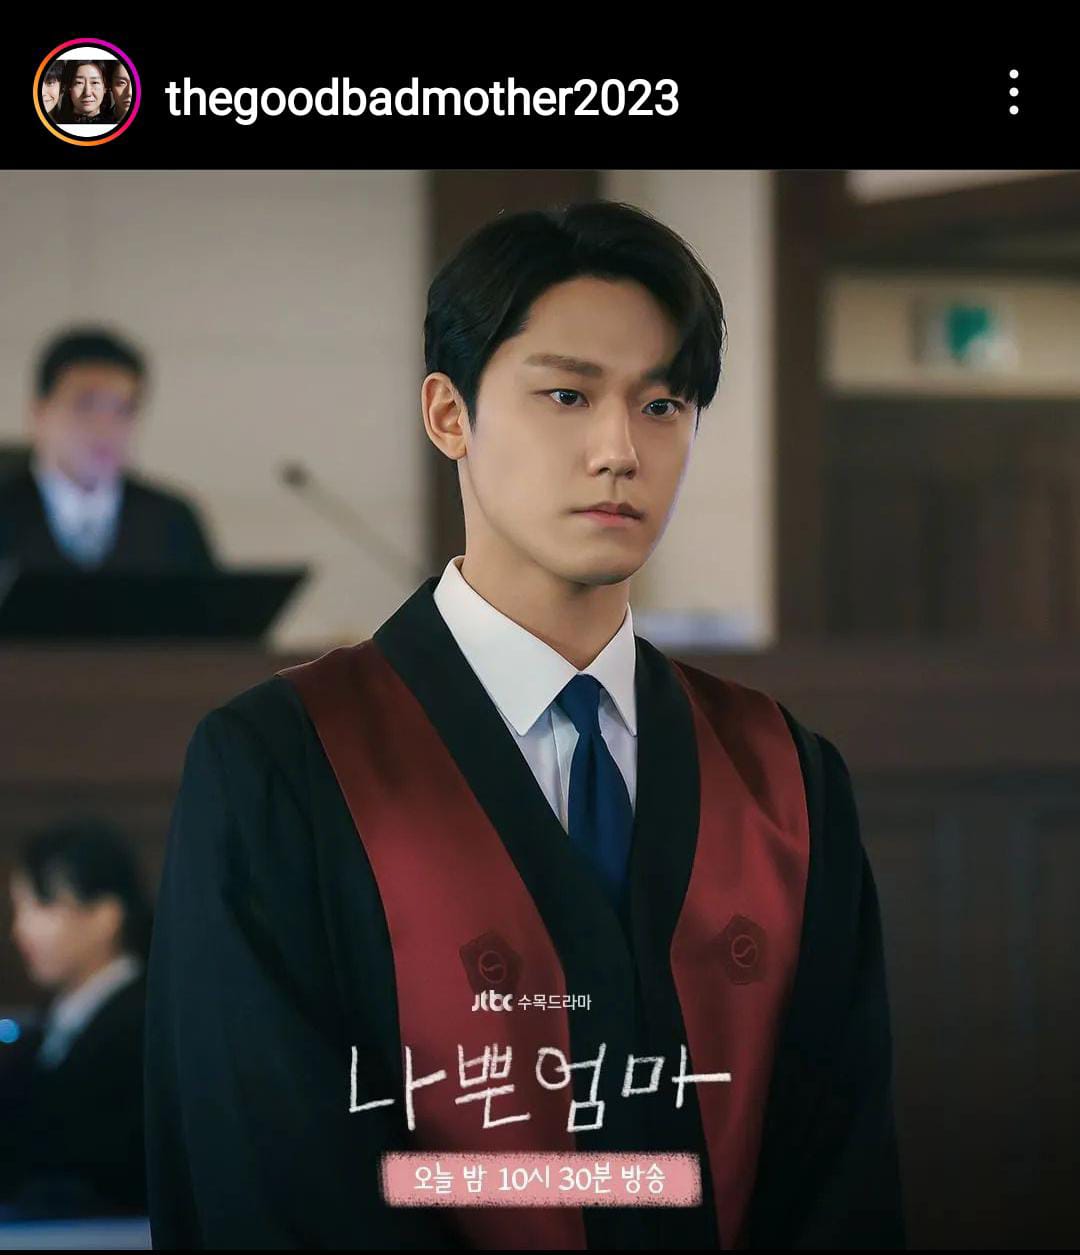 The Good Bad Mother Episode 14, Choi Kang Ho Tampil Memukau di Pengadilan